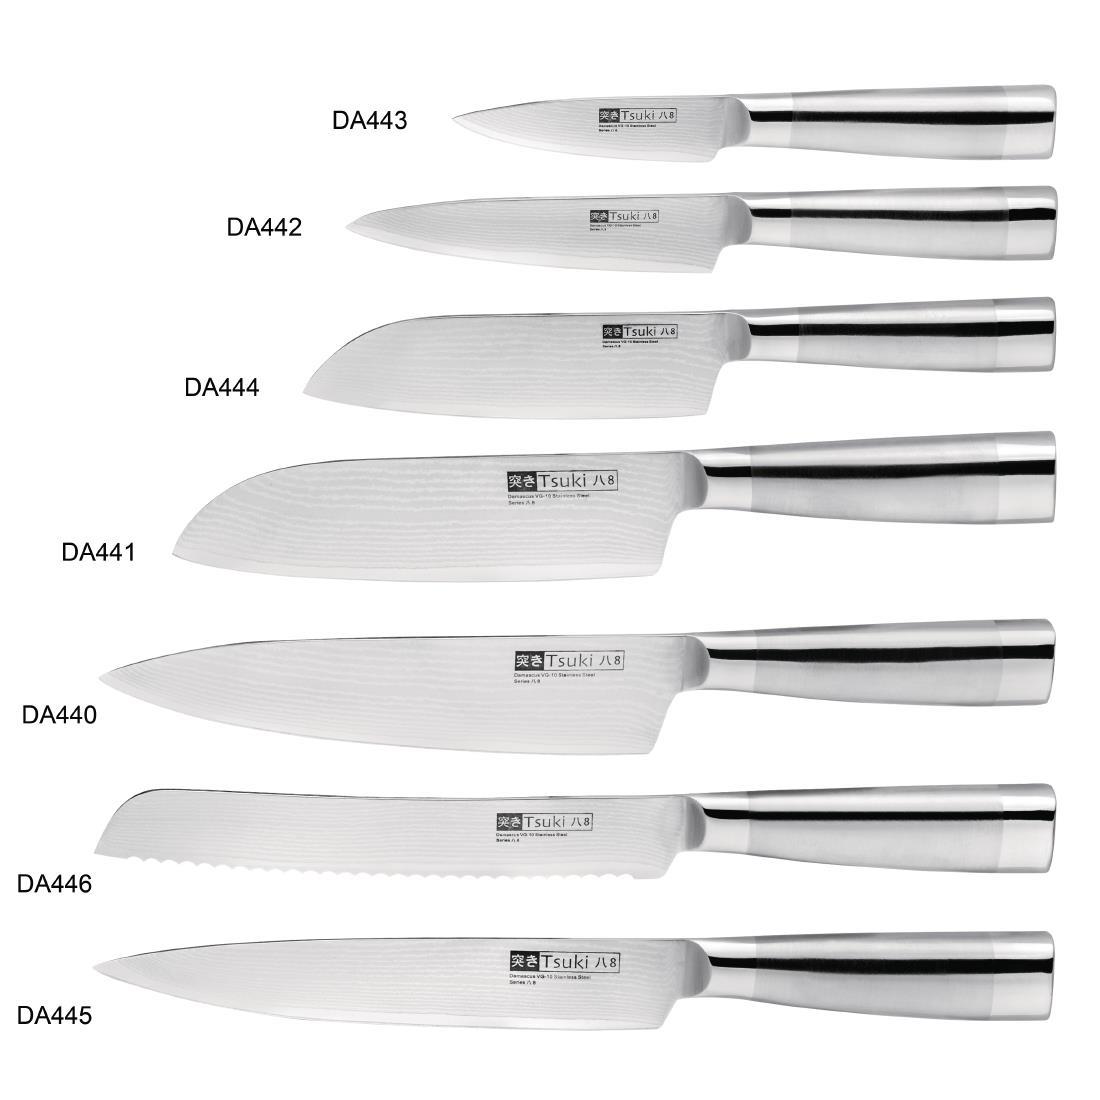 Vogue Tsuki Series 8 Carving Knife 20cm - DA445  - 5